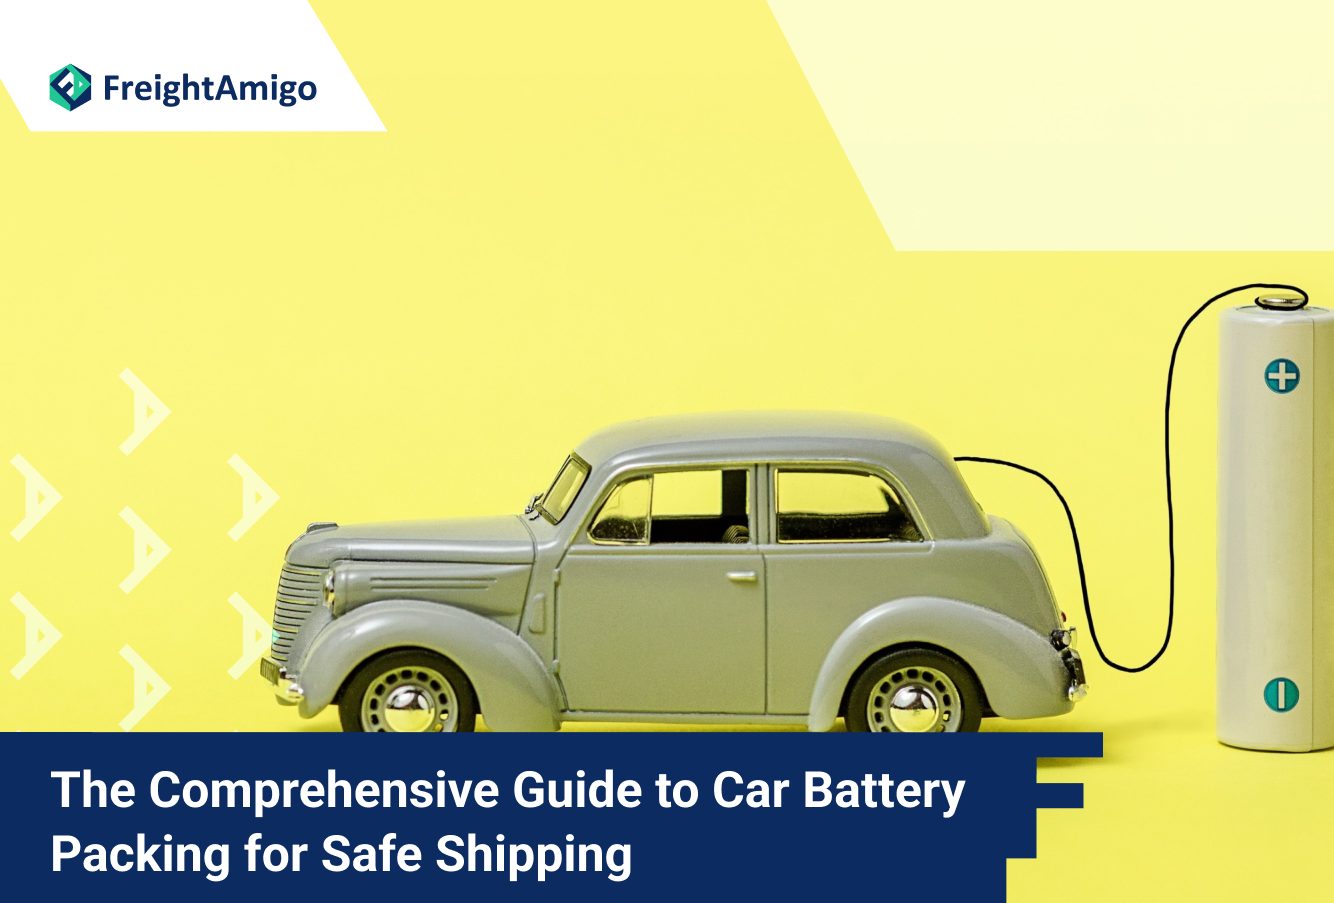 Comprehensive guide to car batteries packing, FreightAmigo